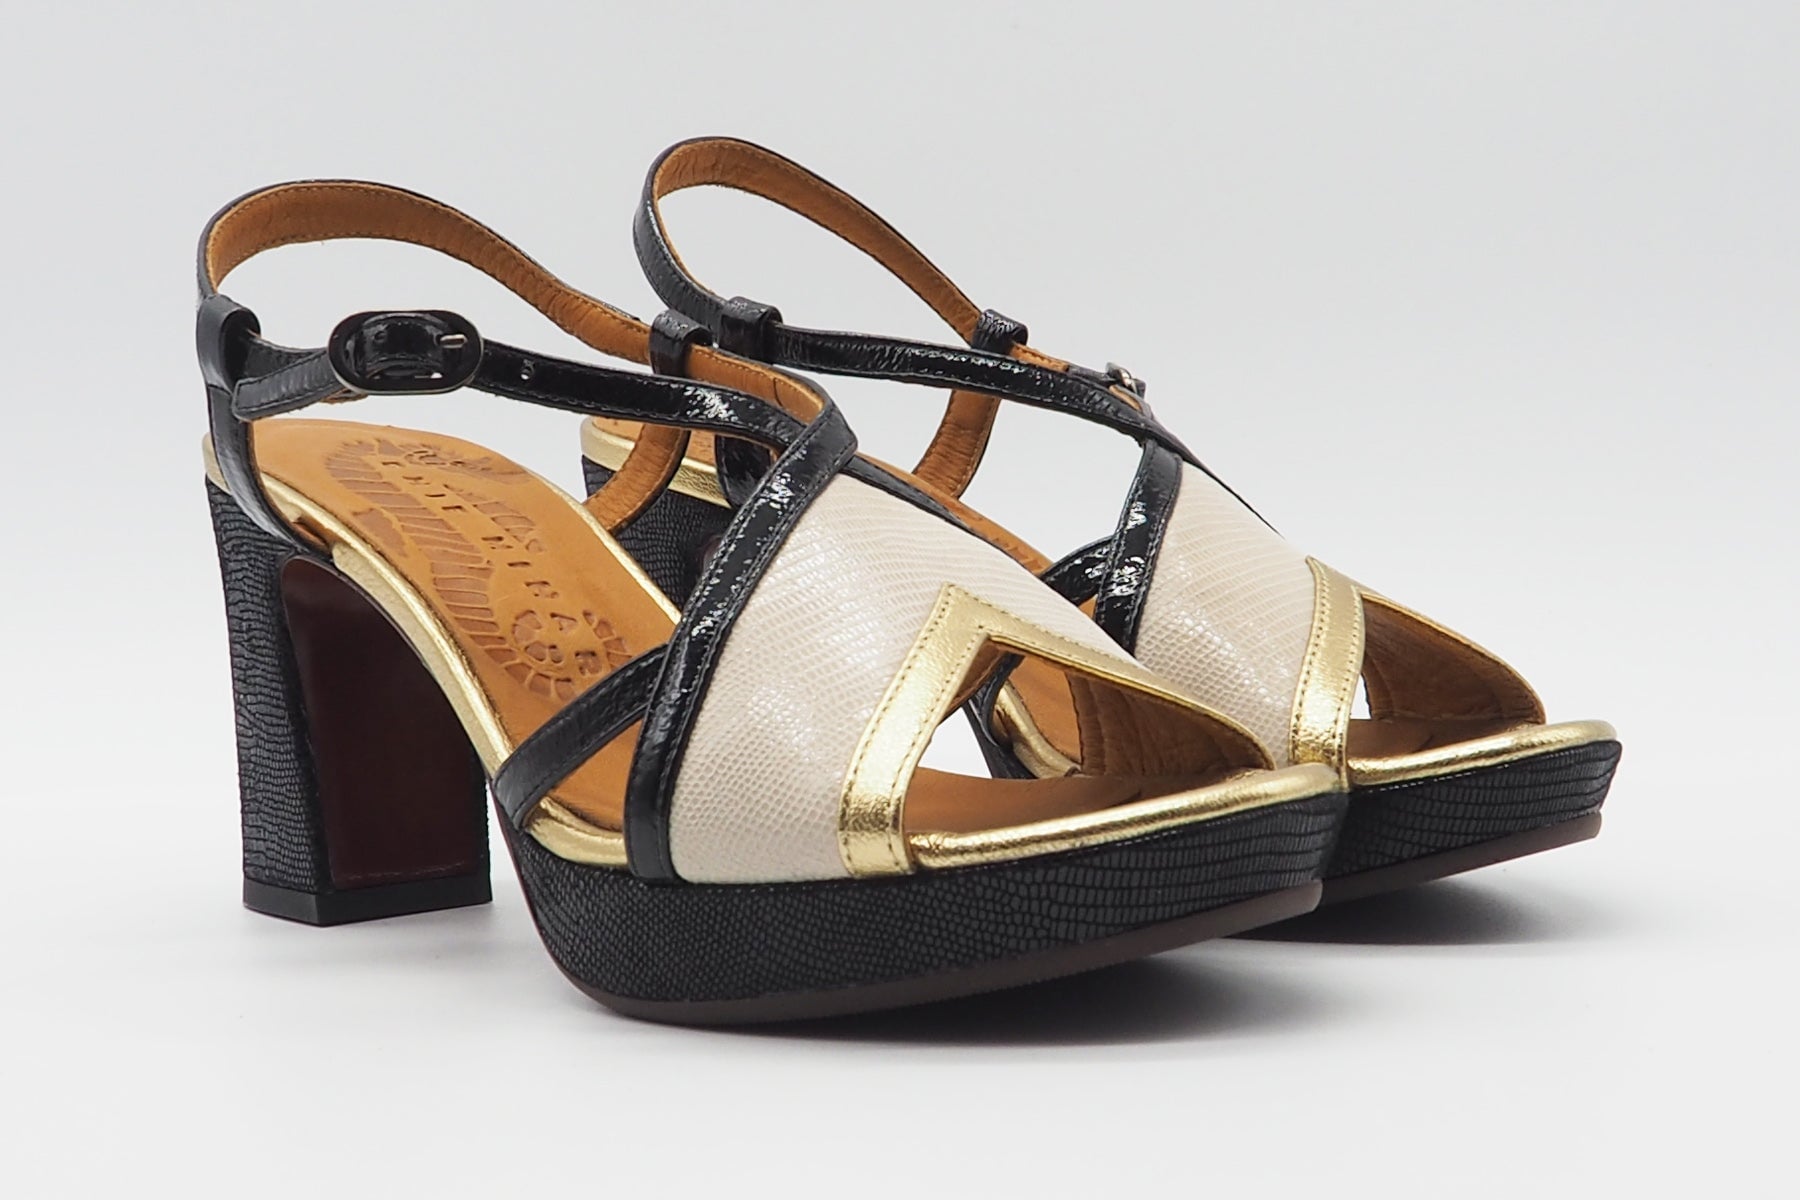 Damen Sandale aus Leder in Schwarz & Beige - Kat - Absatz 9cm Damen Sandalen Chie Mihara 